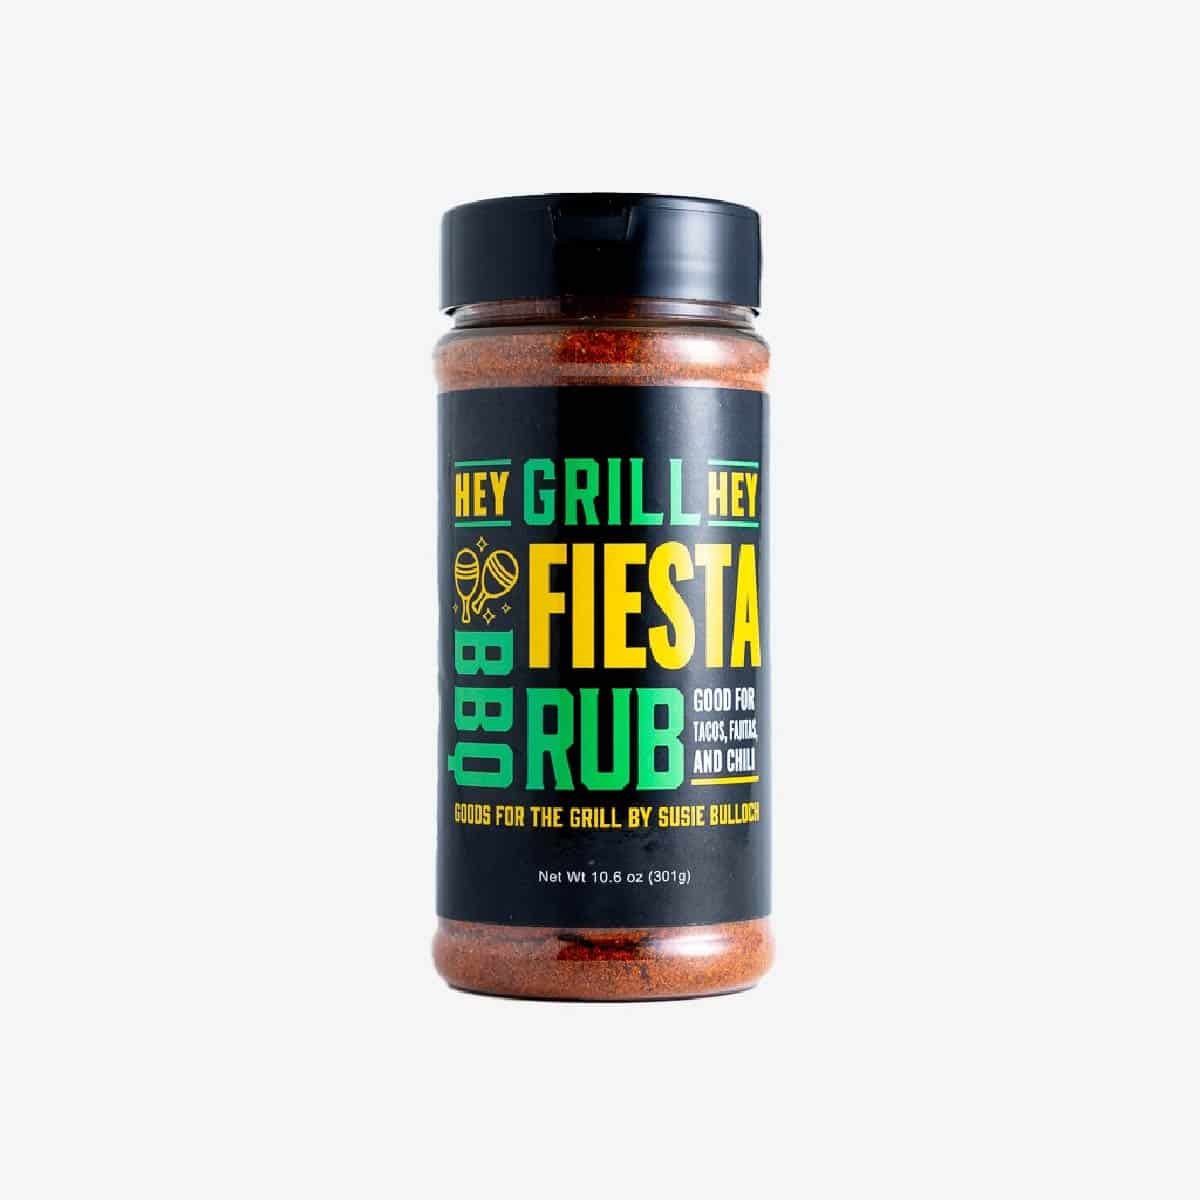 12 ounce shaker of Fiesta Rub.